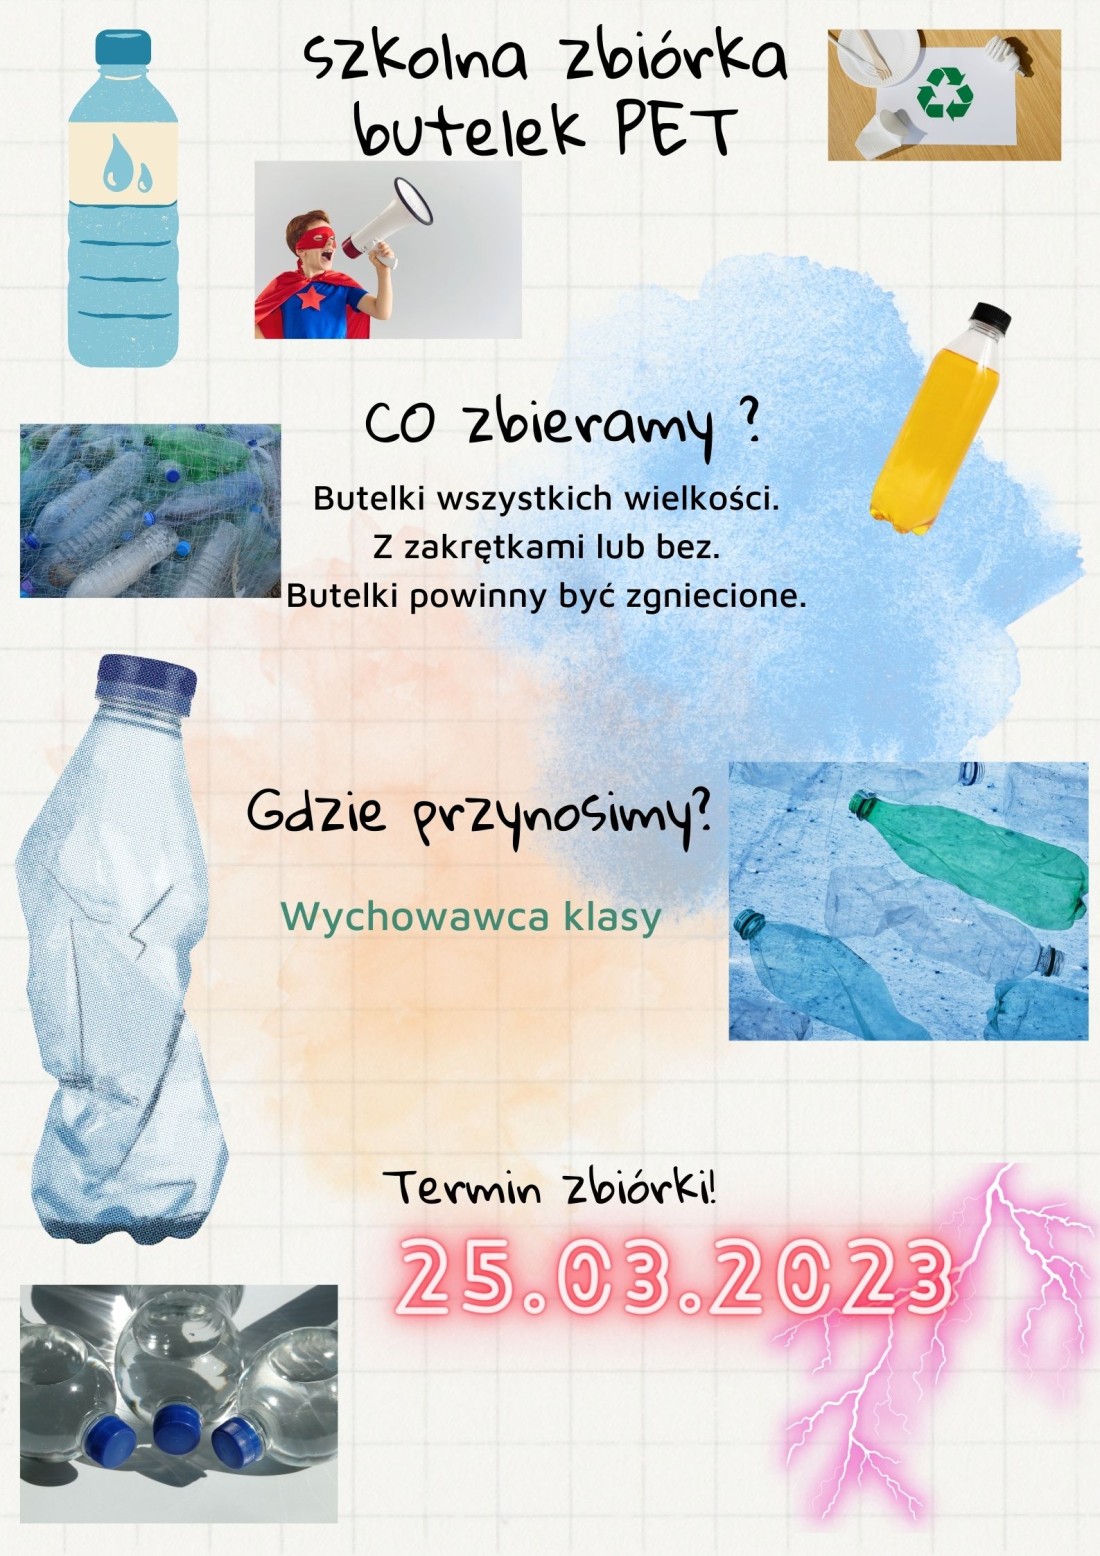 Zbiórka butelek PET - plakat informacyjny